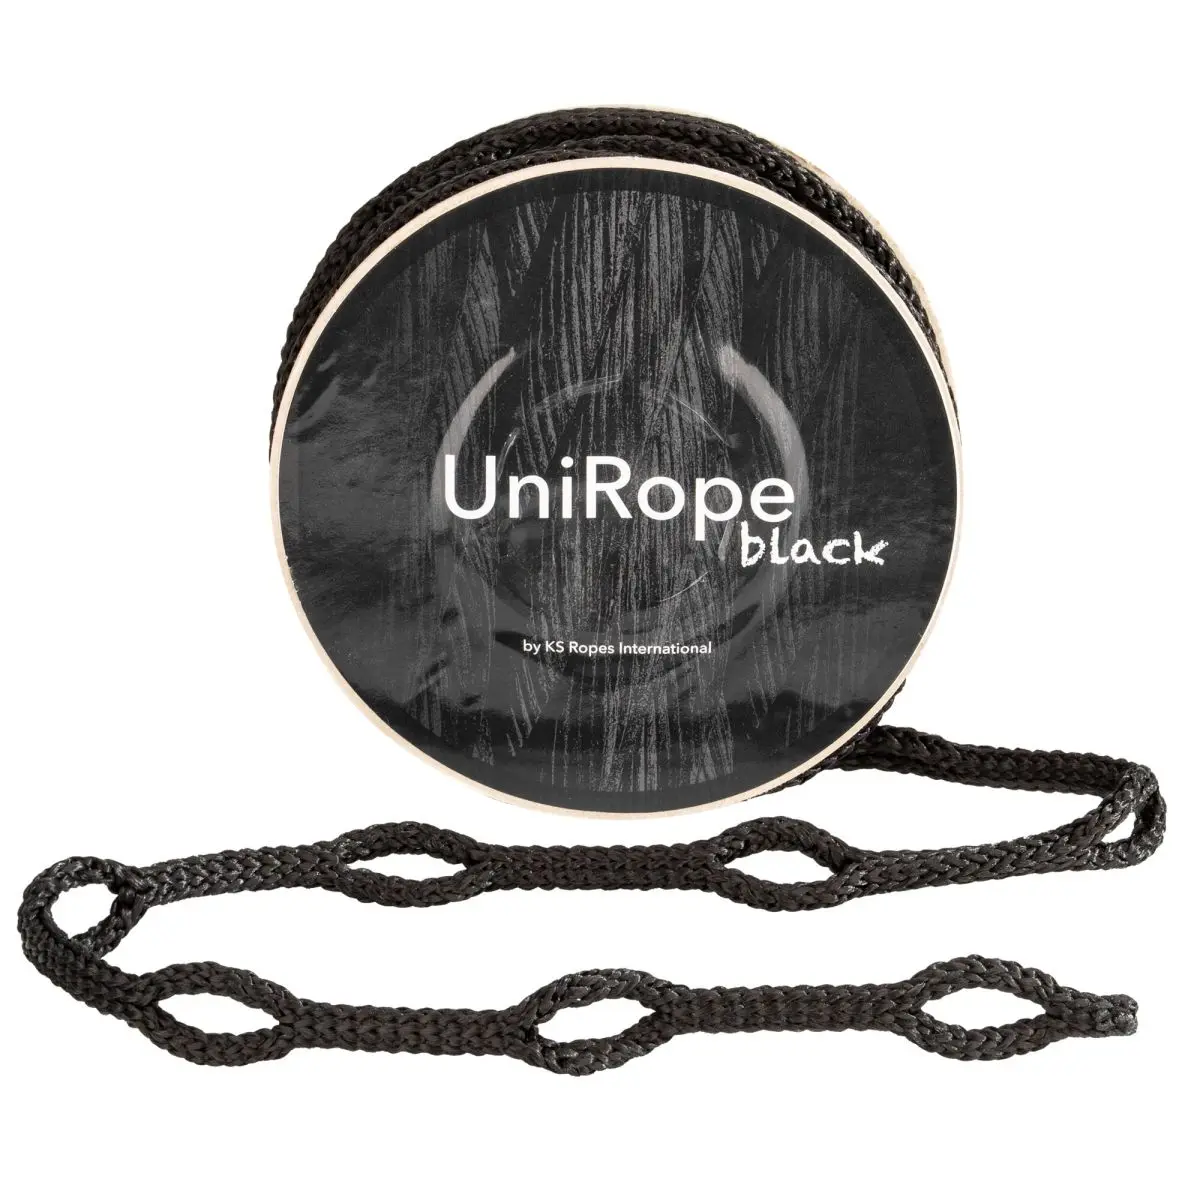 UniRope - black, 1000 x 0,8 cm